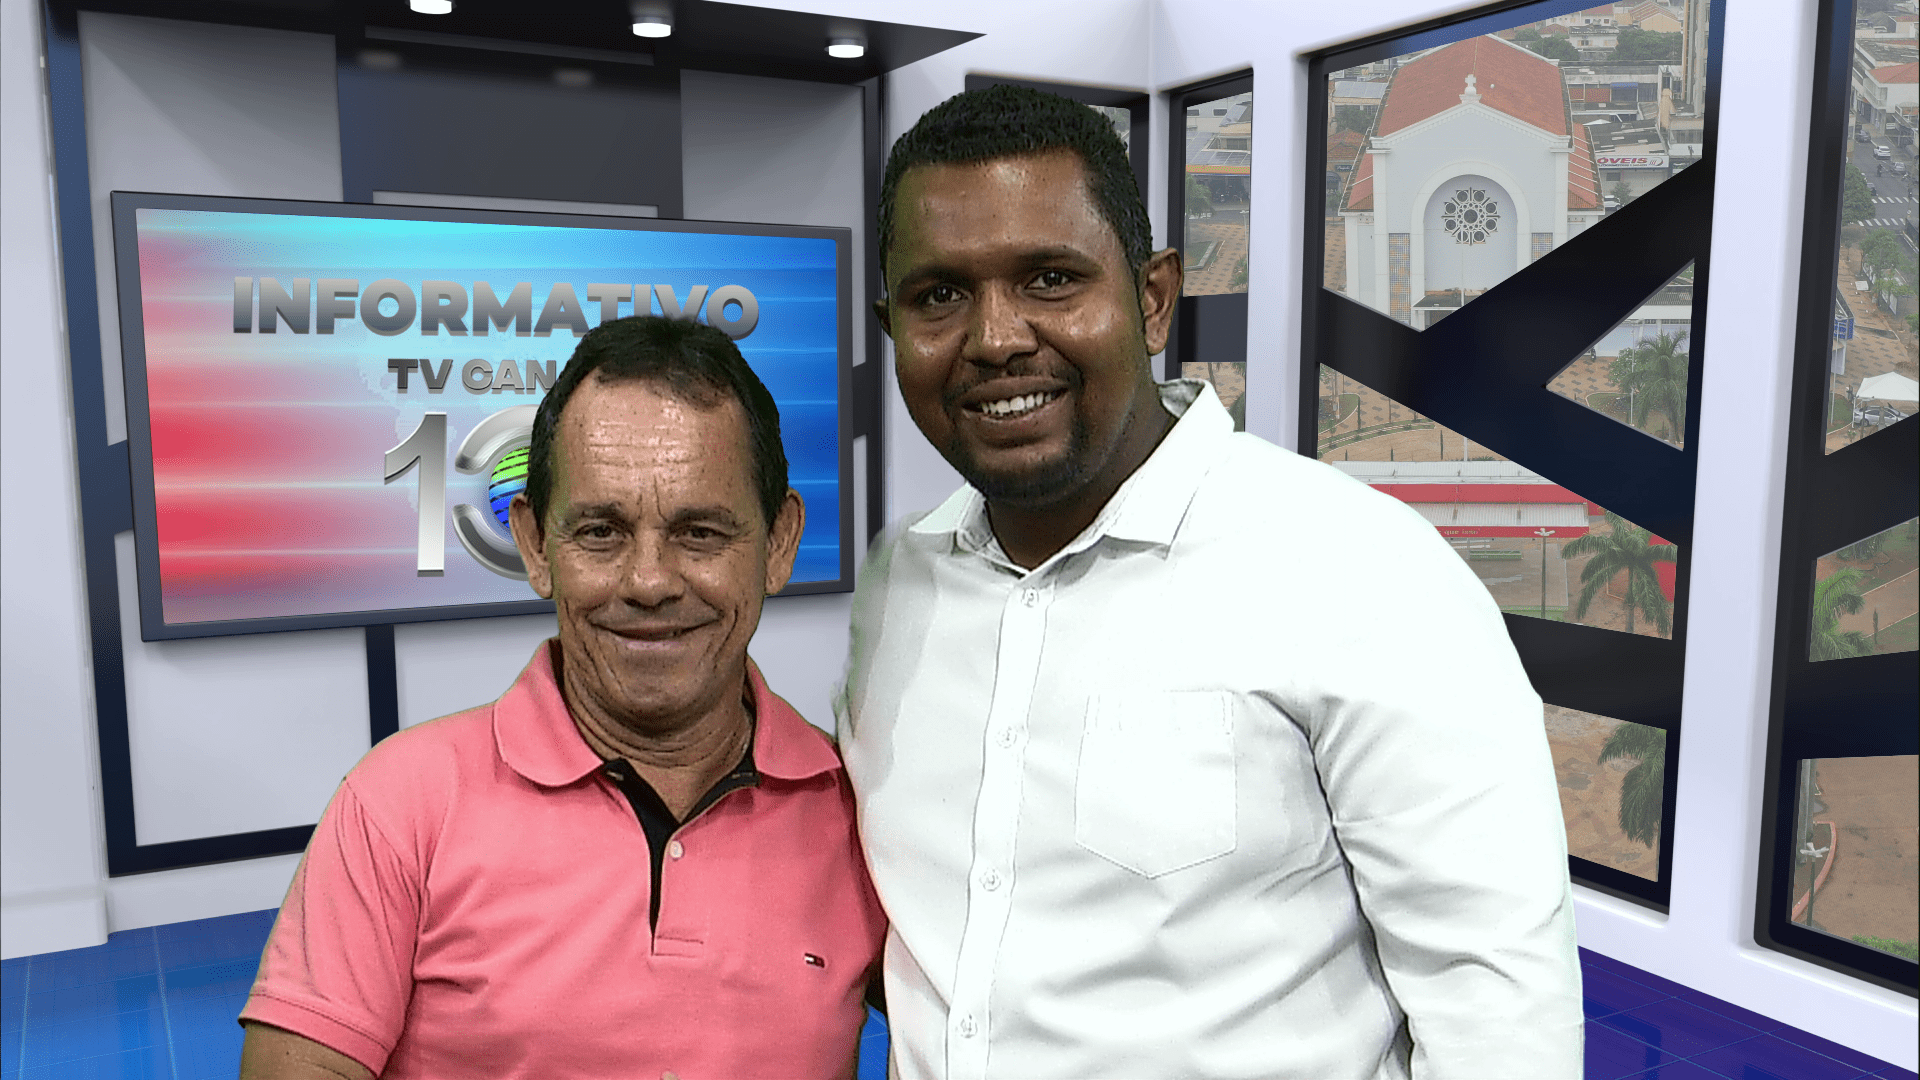 Nesta Segunda Feira, 22-04-24, no Informativo Canal Dez com Reginaldo do Prado, tem uma super entrevista com Samuel Leite, da Rádio Difusora FM